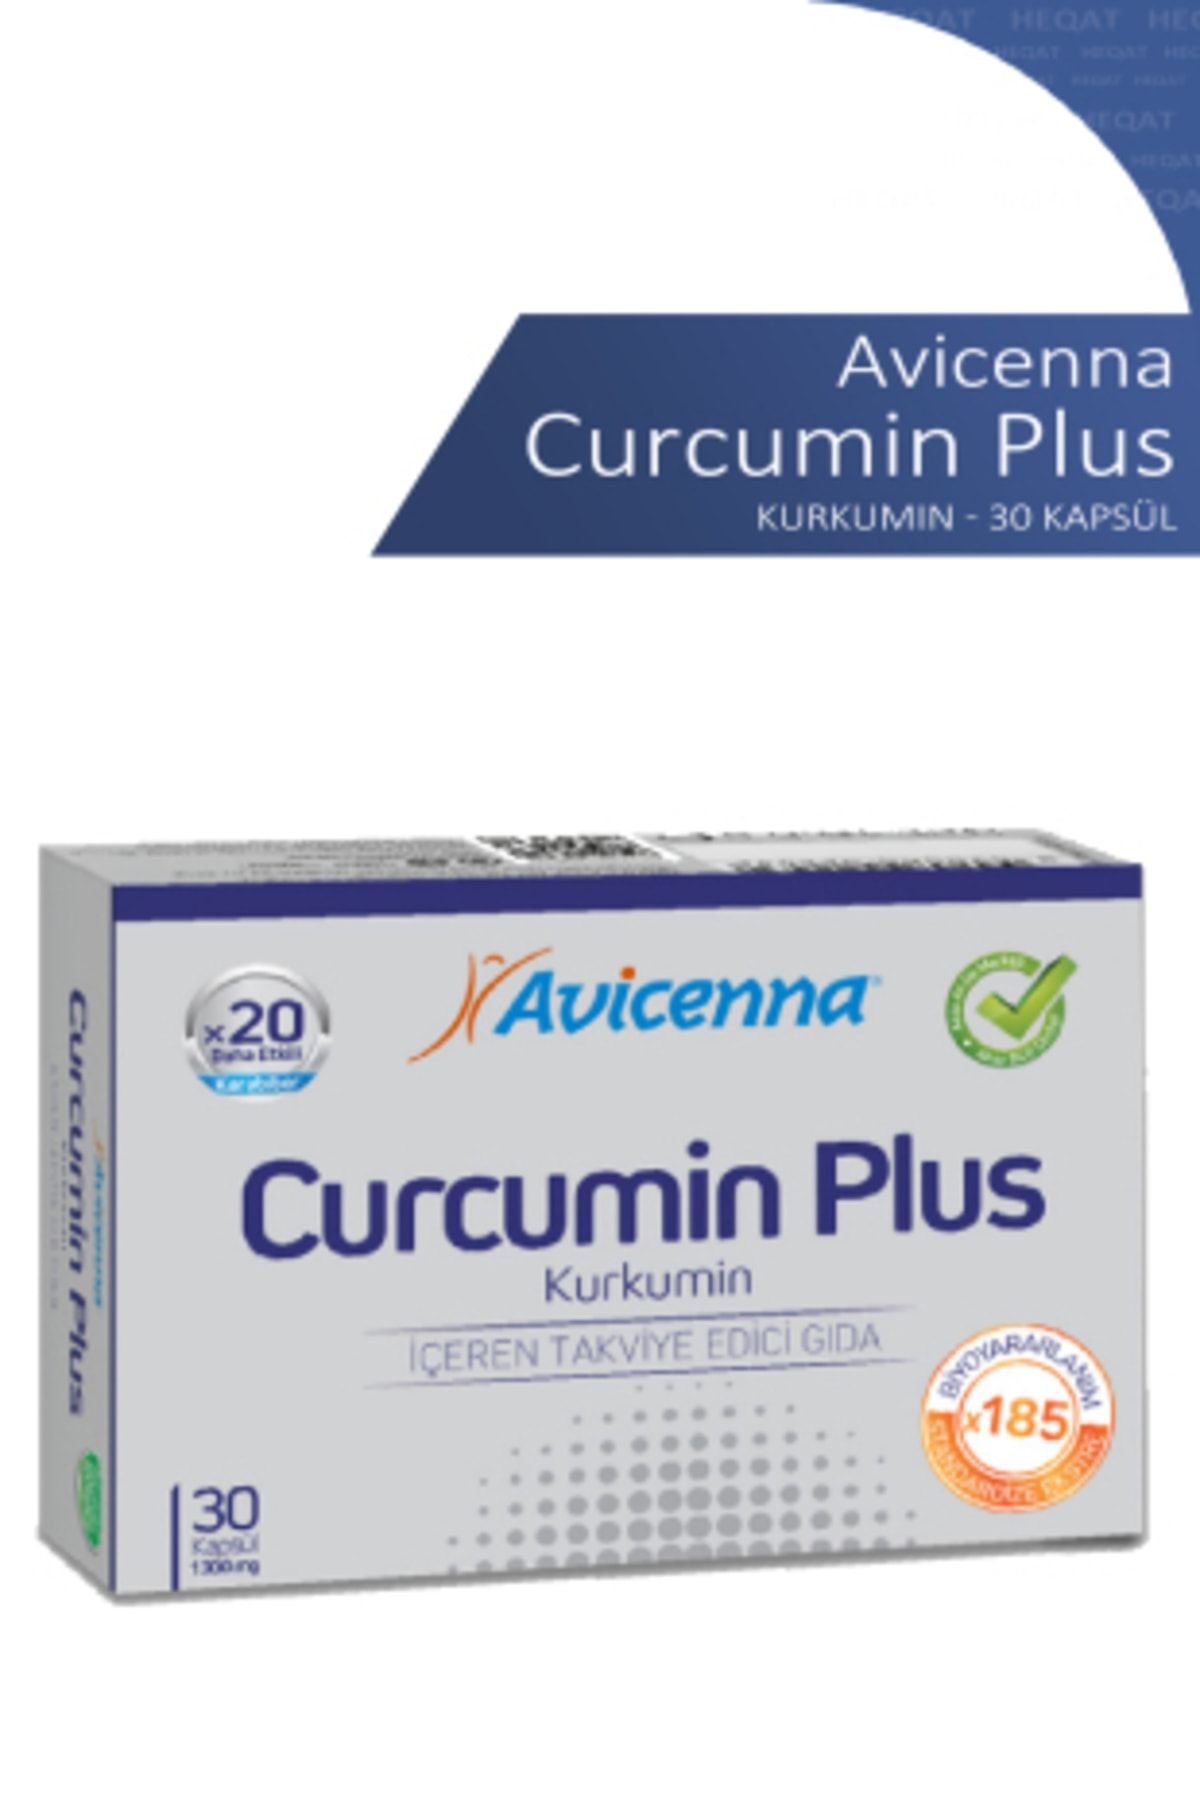 Avicenna Curcumın Plus - Kurkumin İçeren Takviye Edici Gıda -  30 S0ftgel - 8690088023019 .......